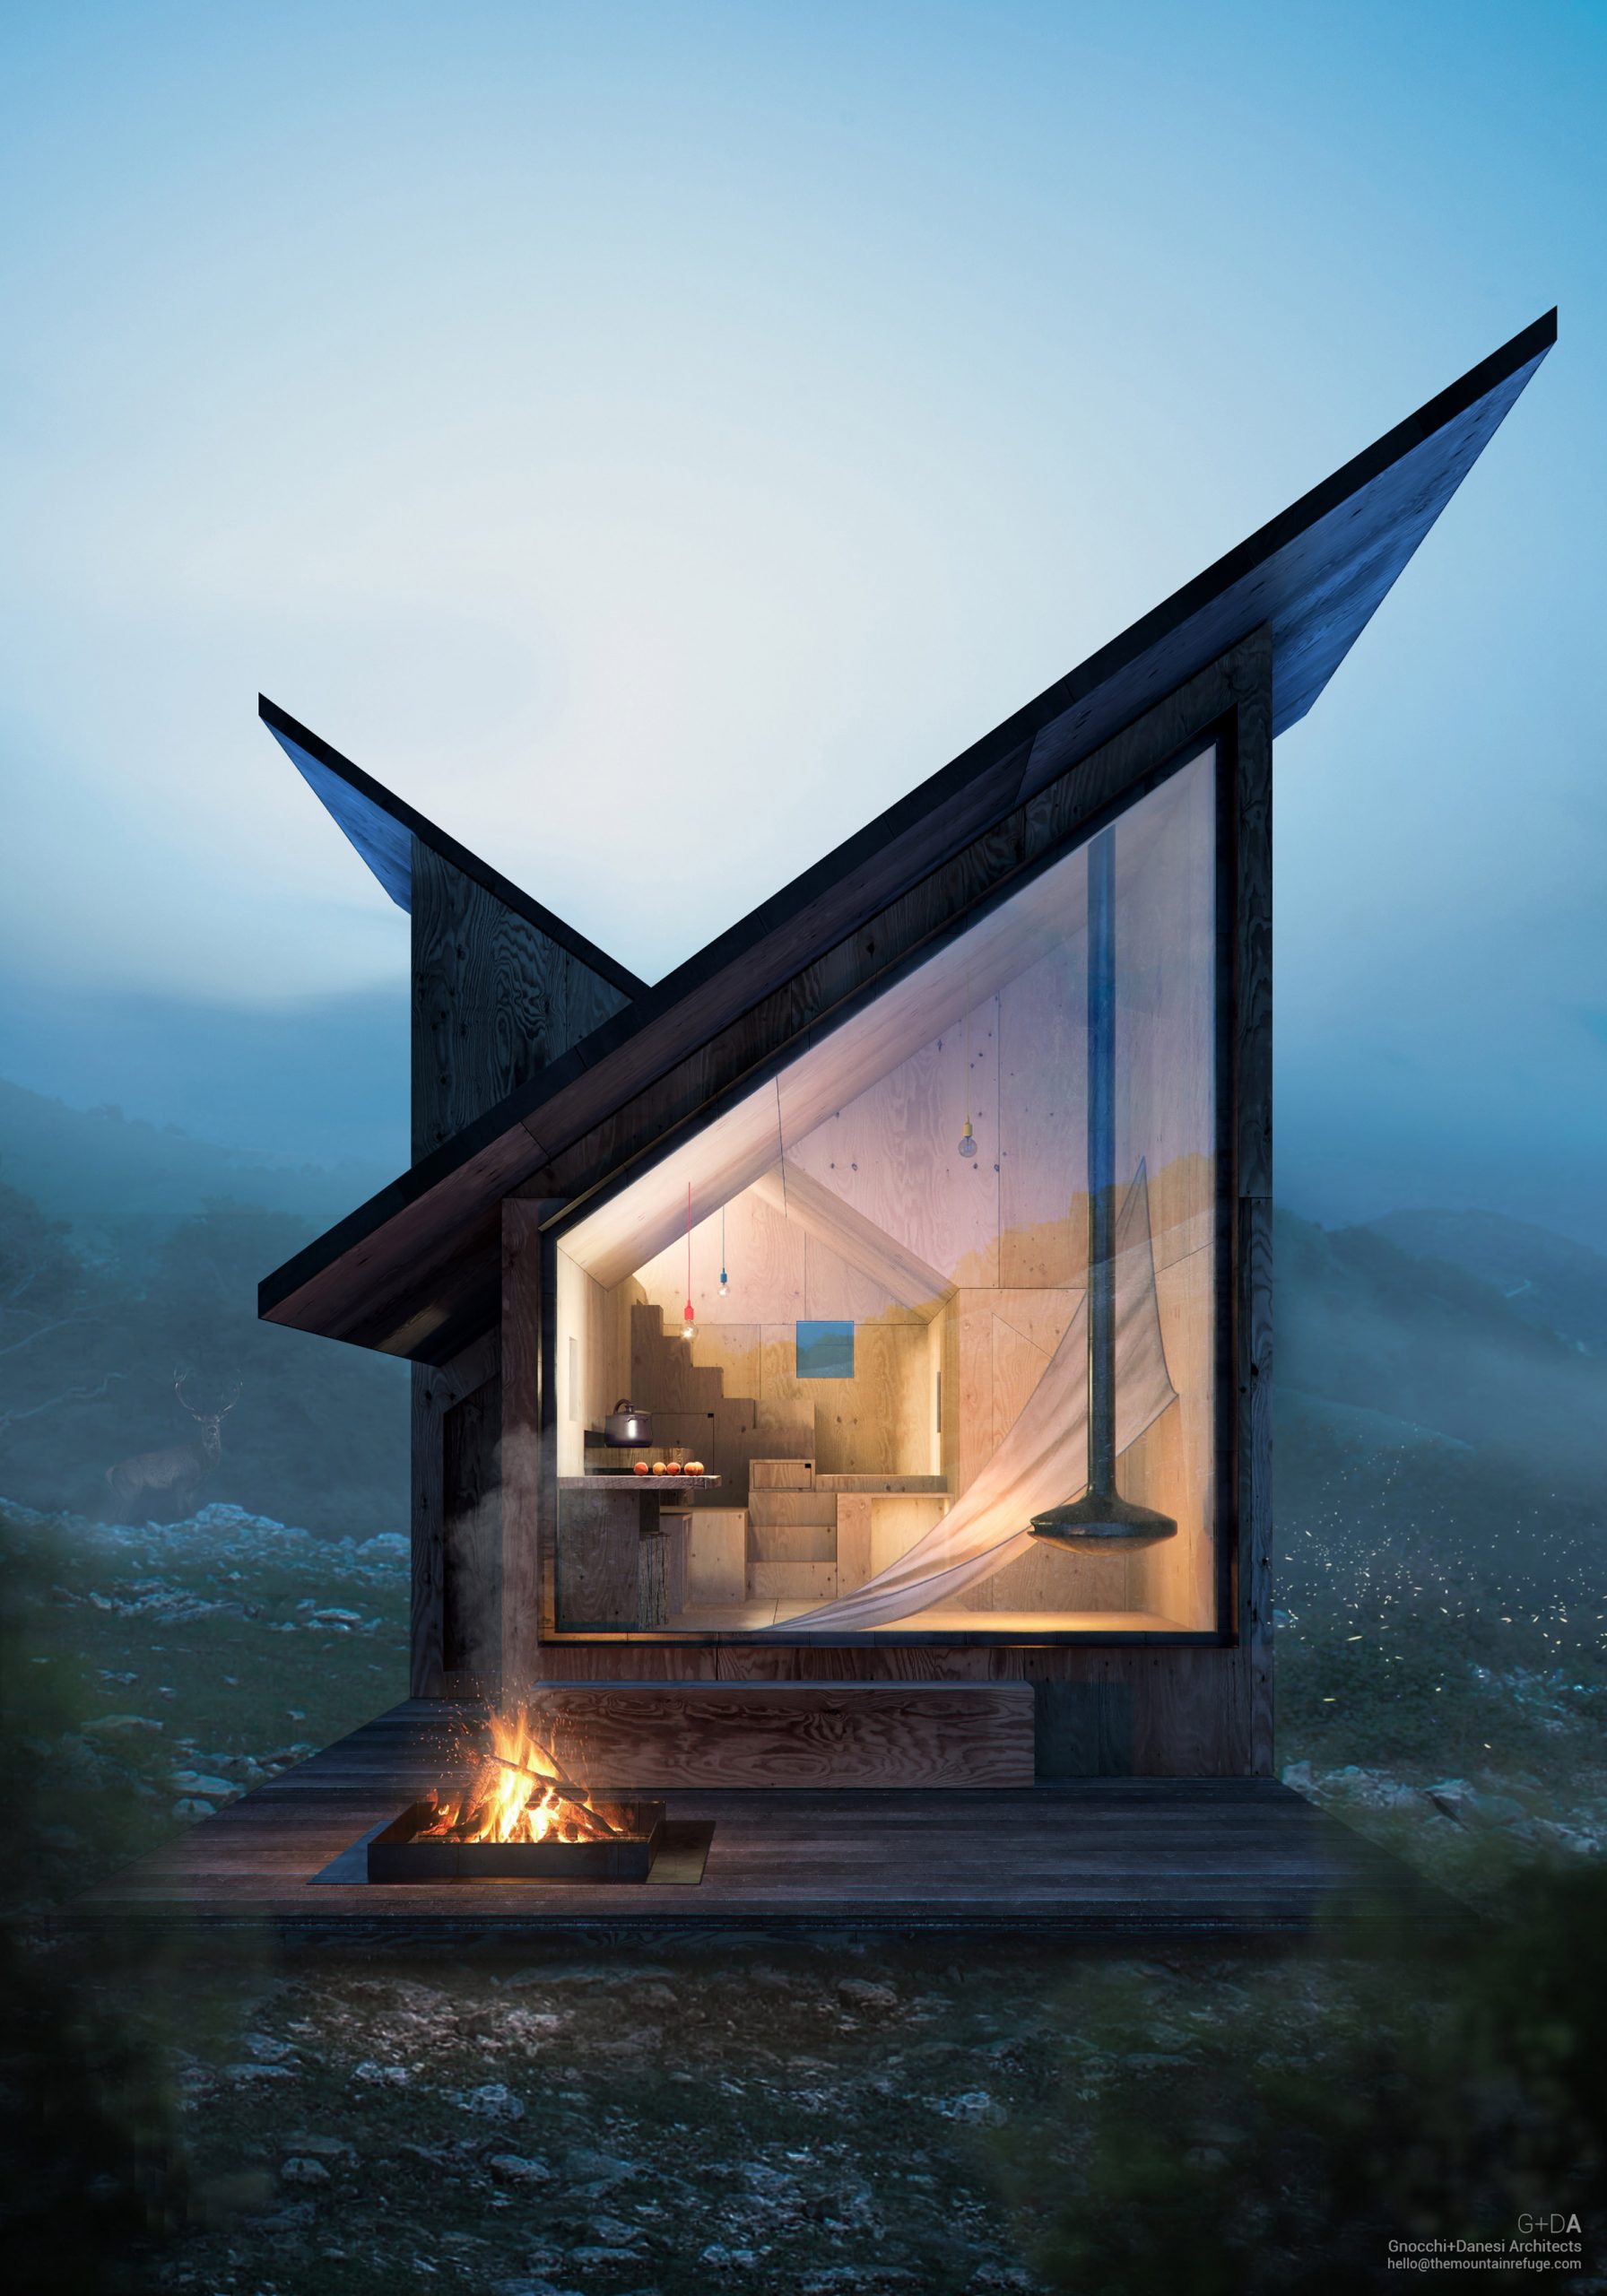 architektonický skvost: chata situovaná v prírode so zaujímavým dizajnom